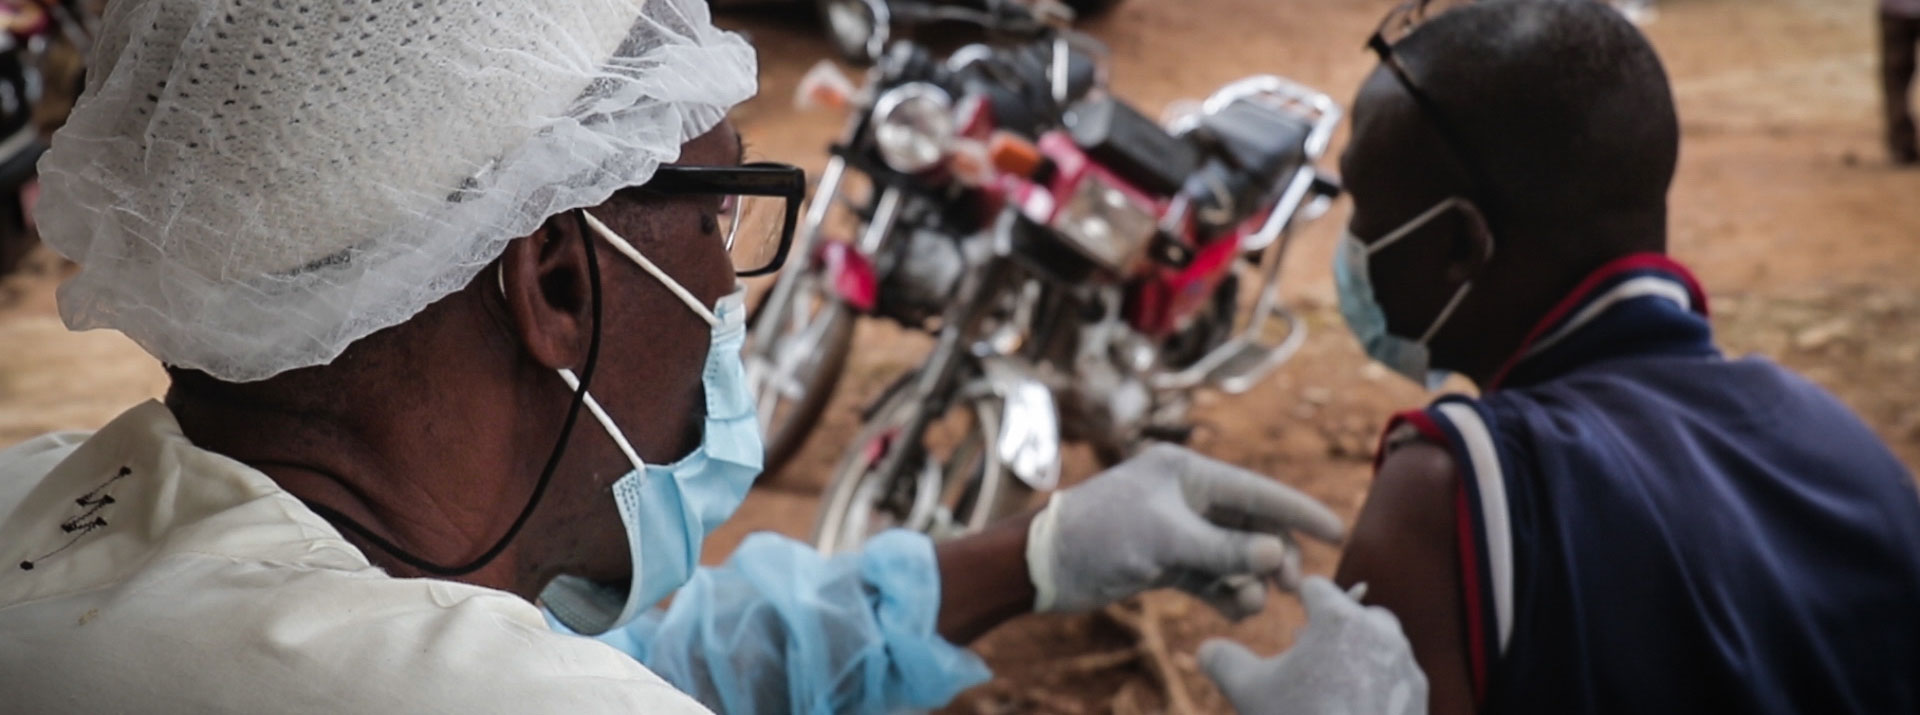 L’épidémie d’Ebola en Guinée officiellement terminée